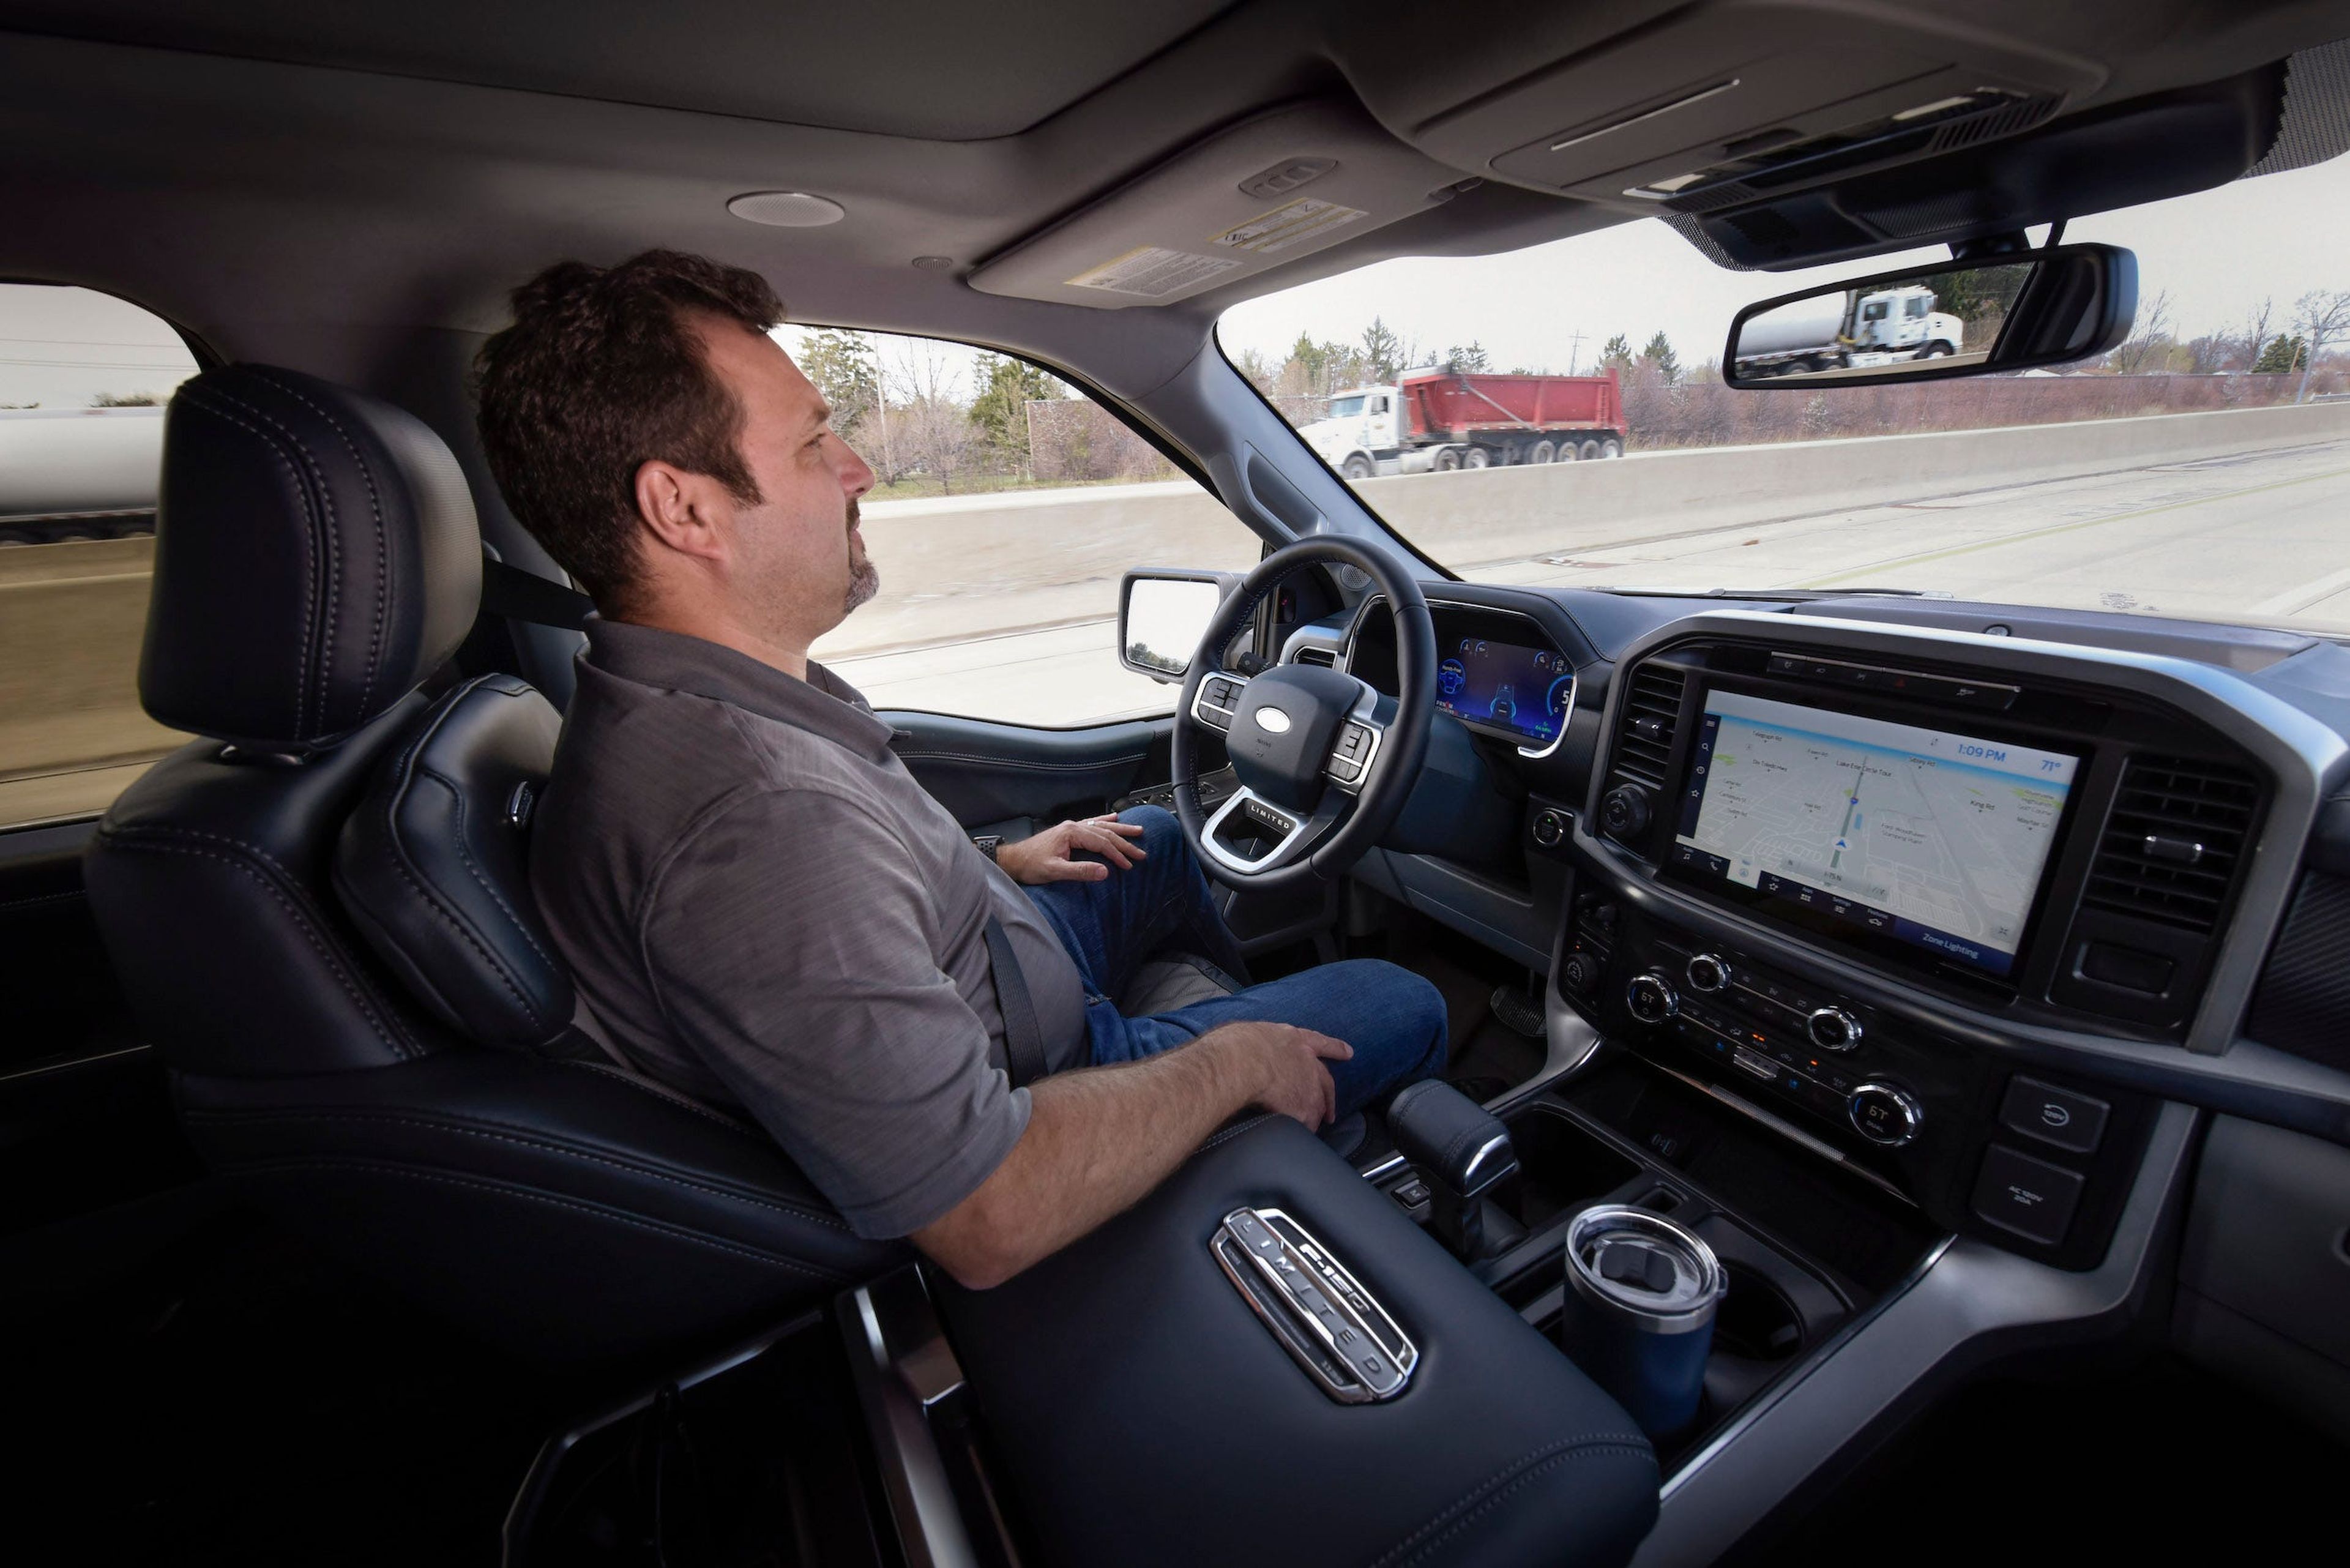 El Ford BlueCruise anuncia la "conducción sin manos". Los expertos dicen que eso da a los conductores una idea equivocada.